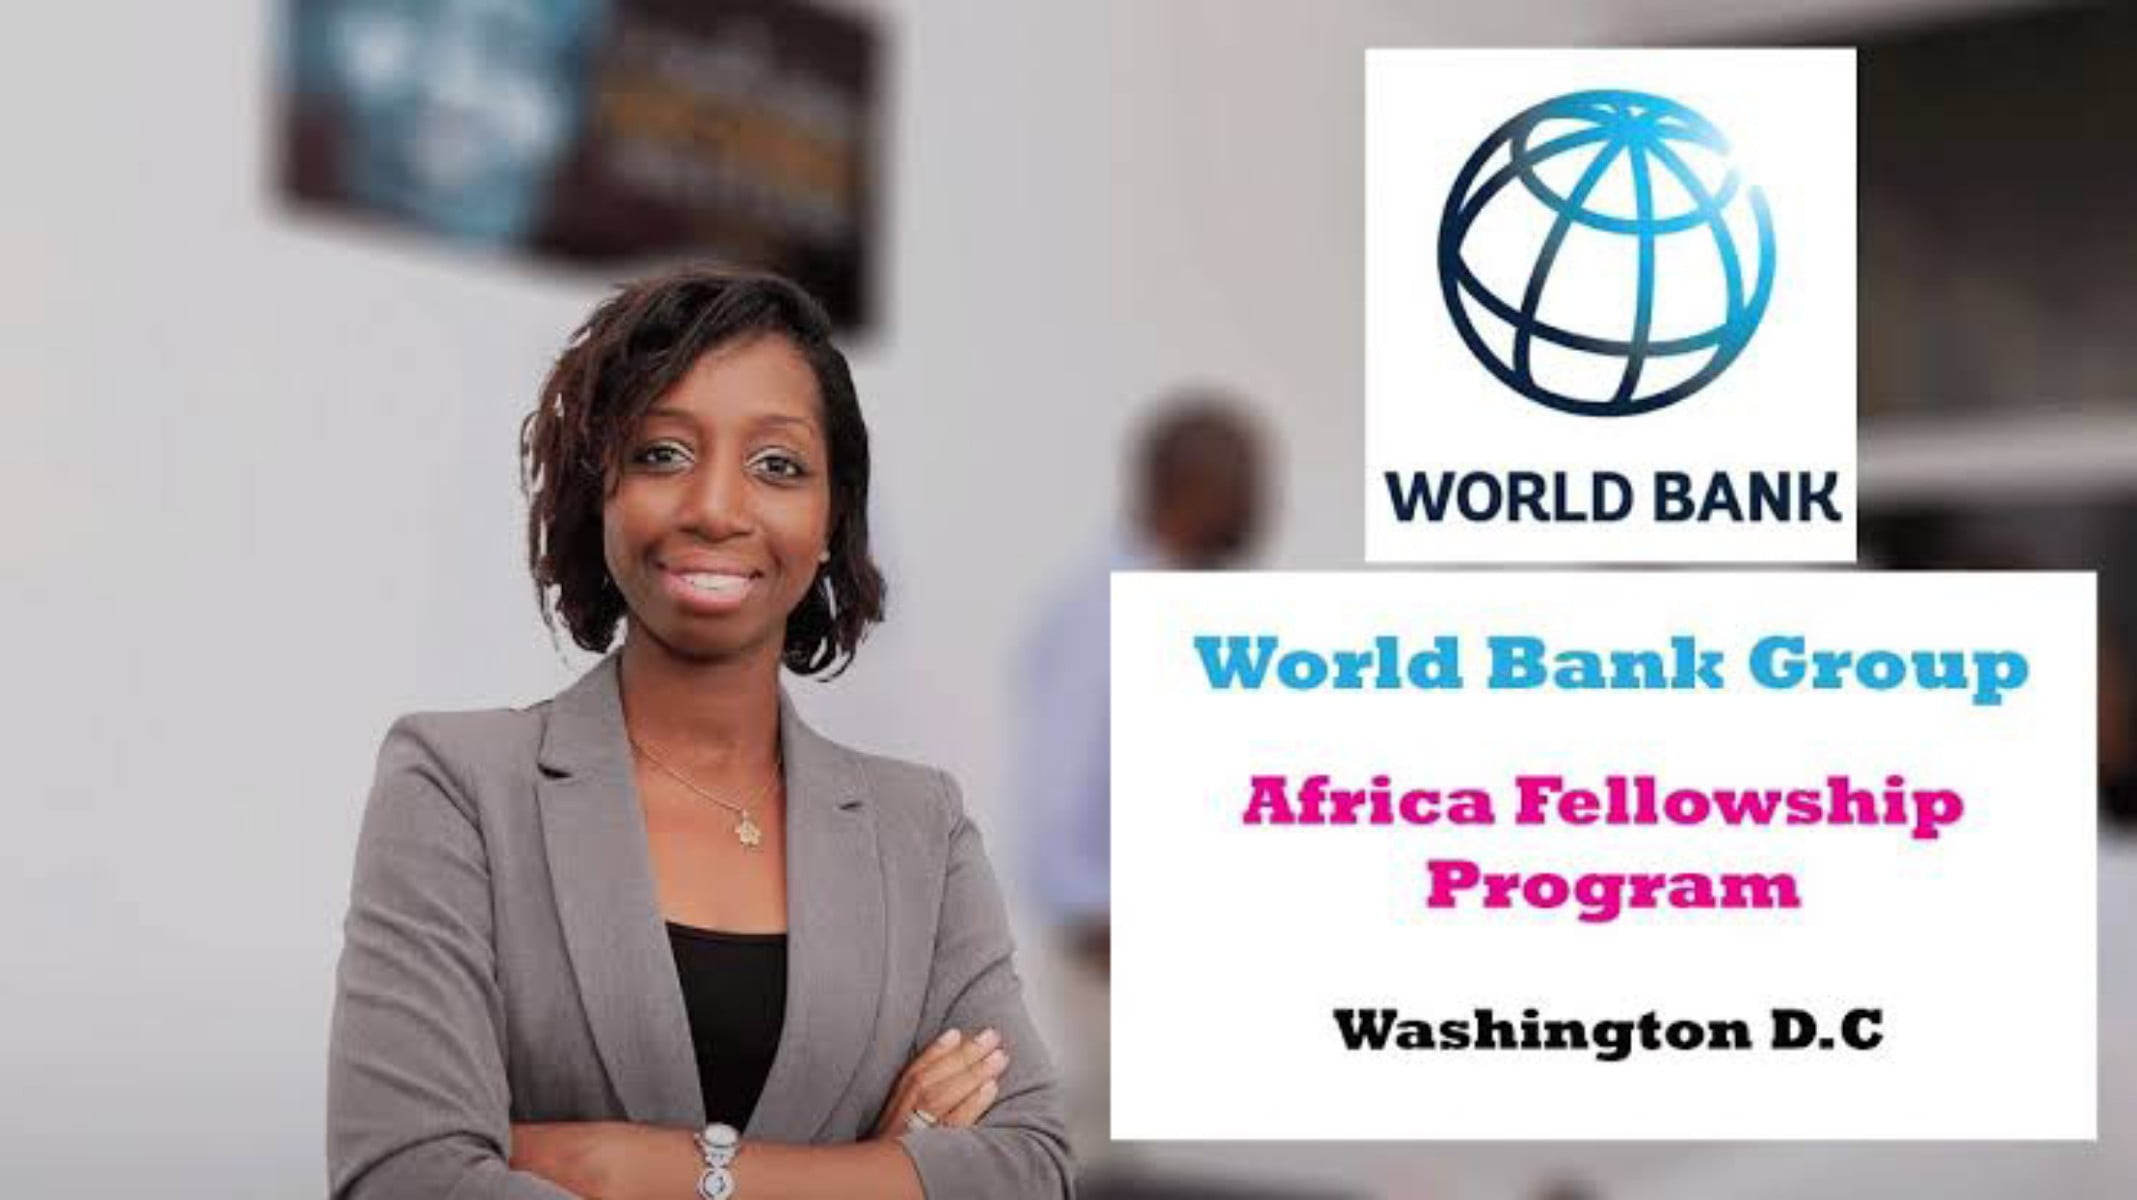 World Bank Group Africa Fellowship Program 2024